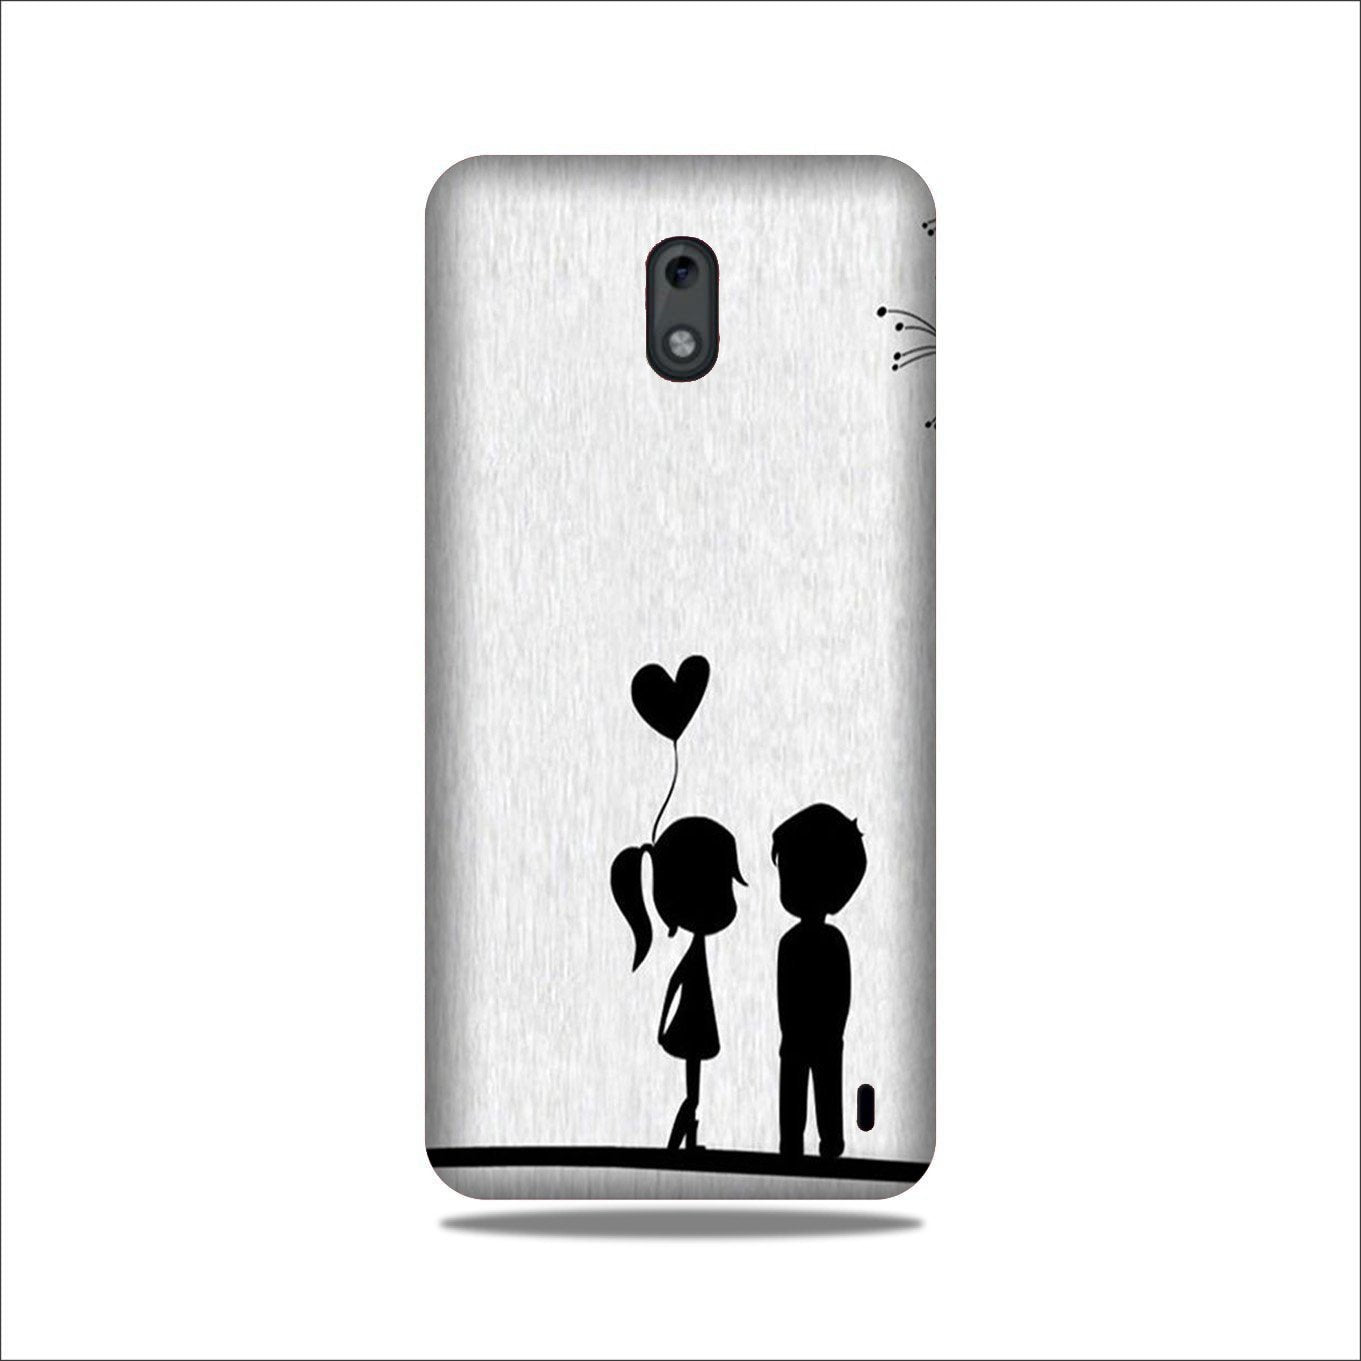 Cute Kid Couple Case for Nokia 2.2 (Design No. 283)